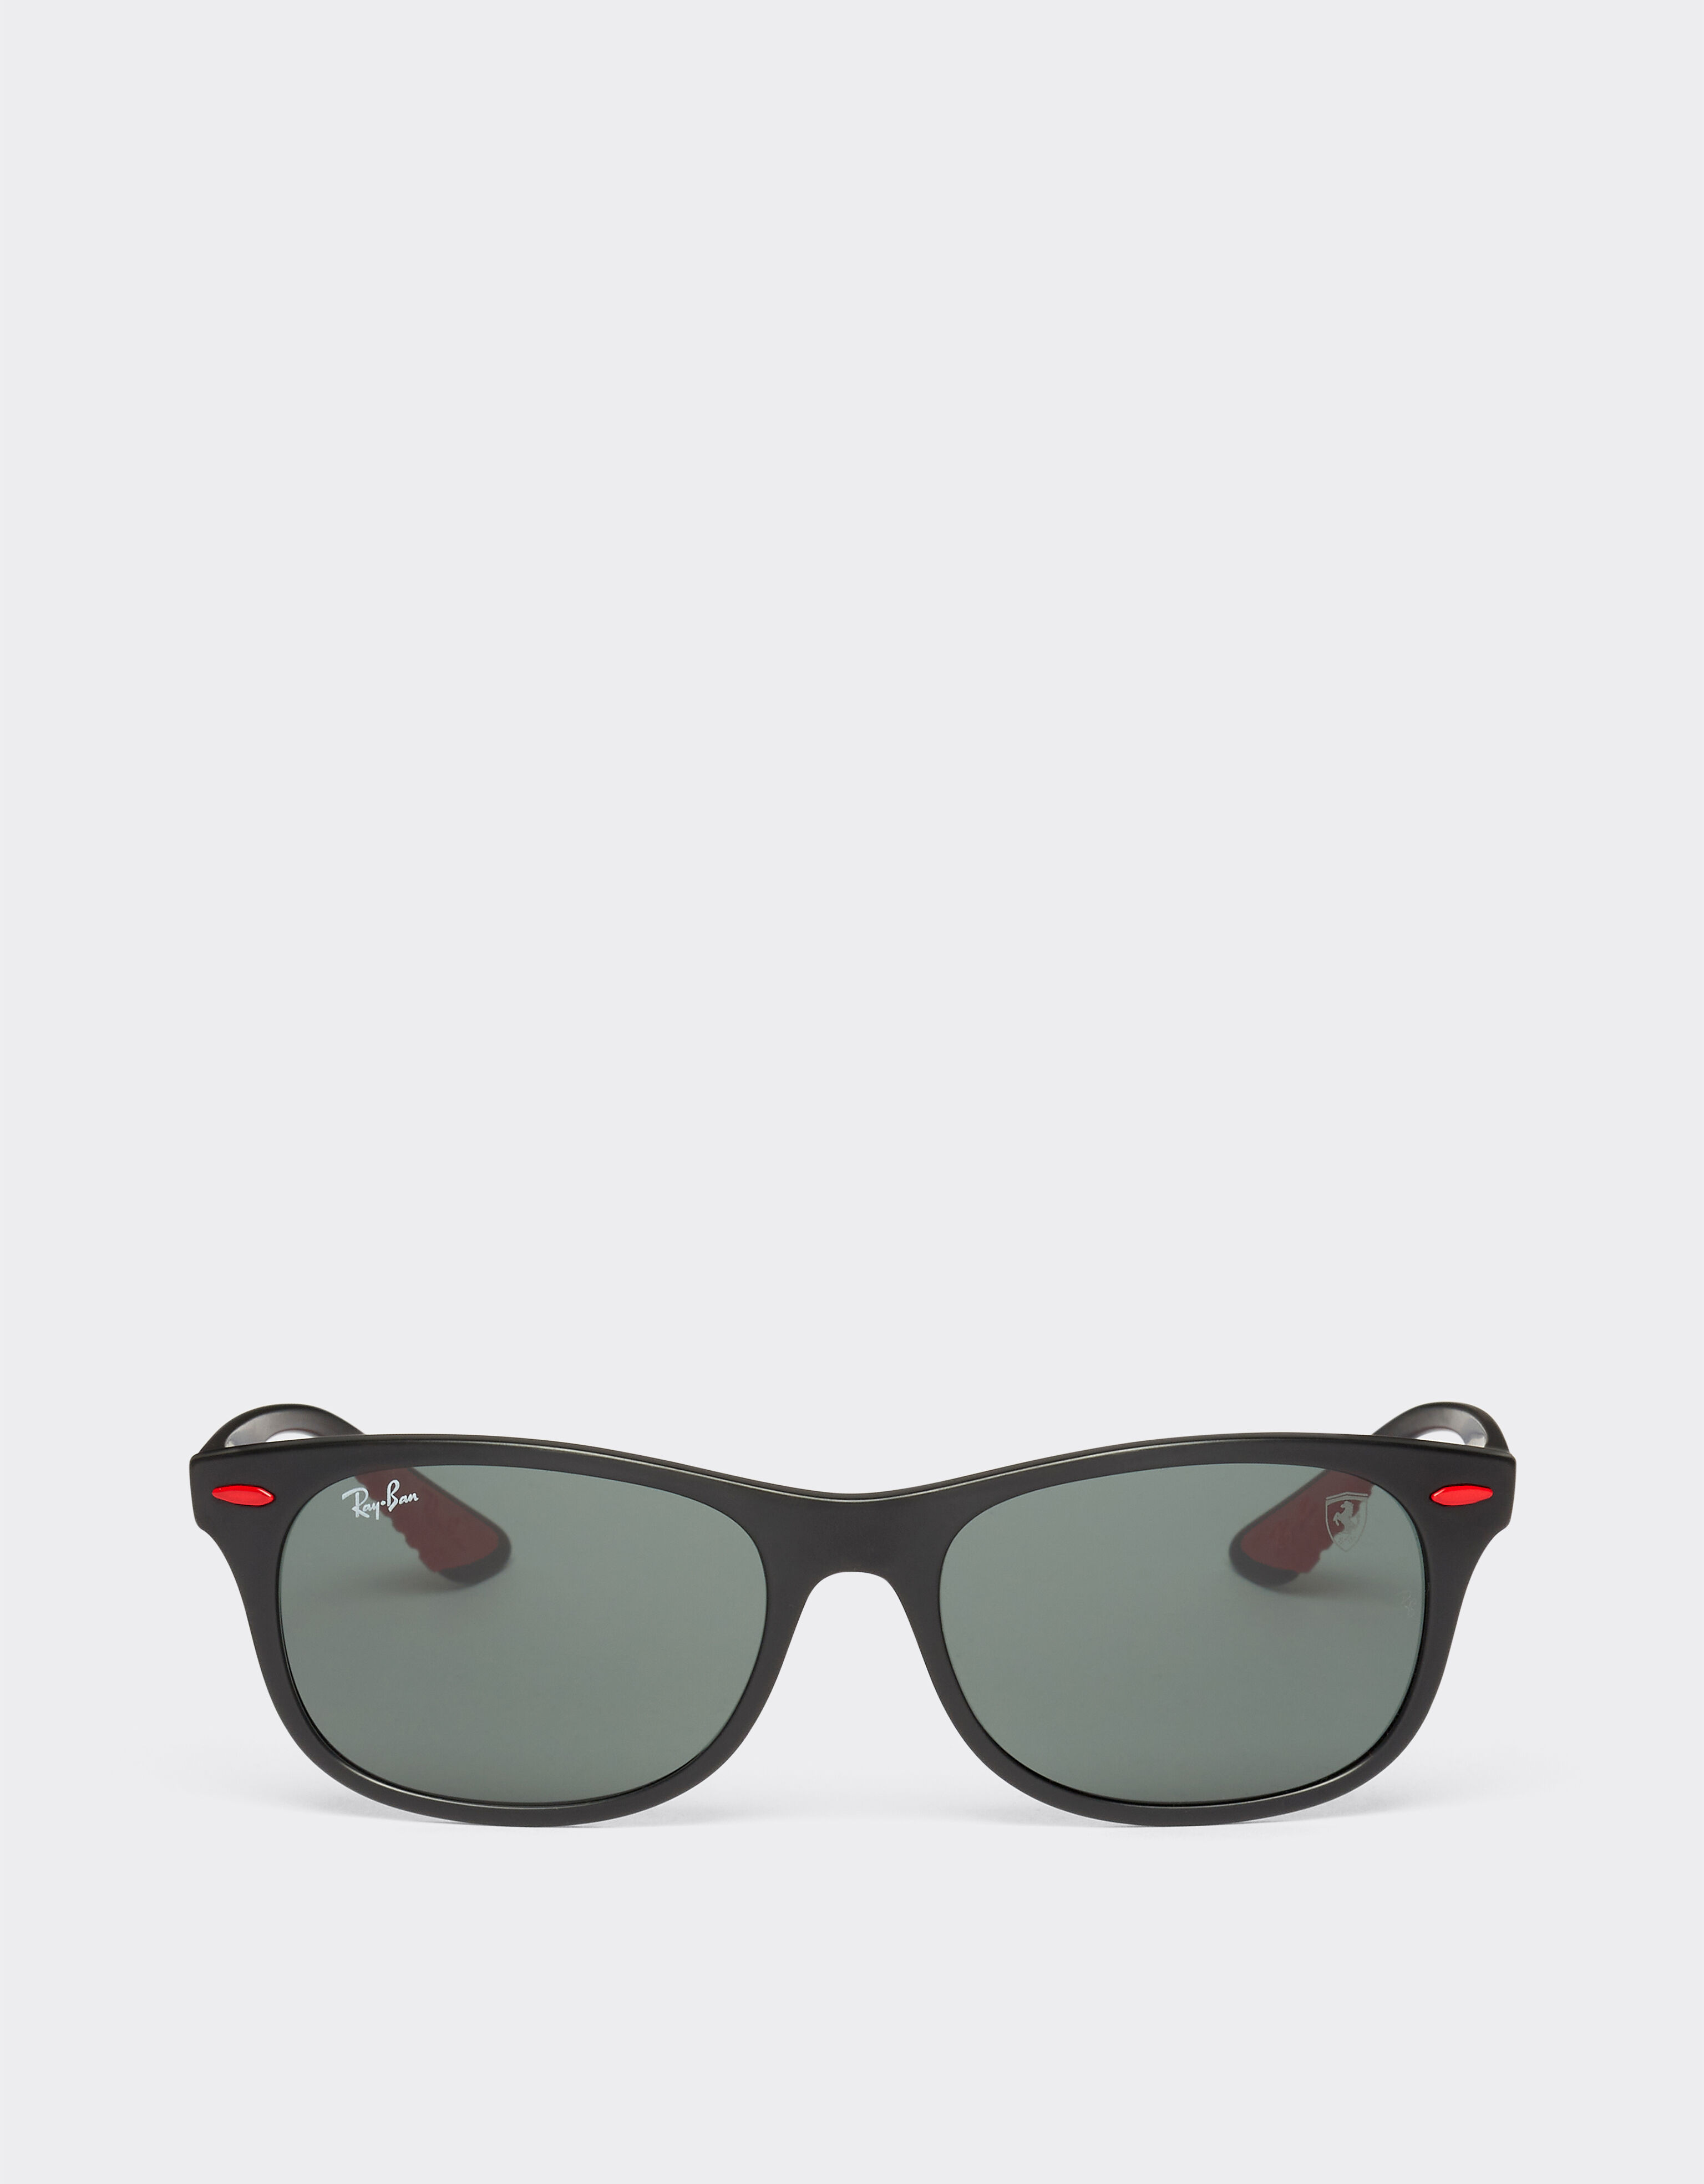 Ferrari Ray-Ban for Scuderia Ferrari 0RB4607M black sunglasses with dark green lenses Rosso Corsa F1135f